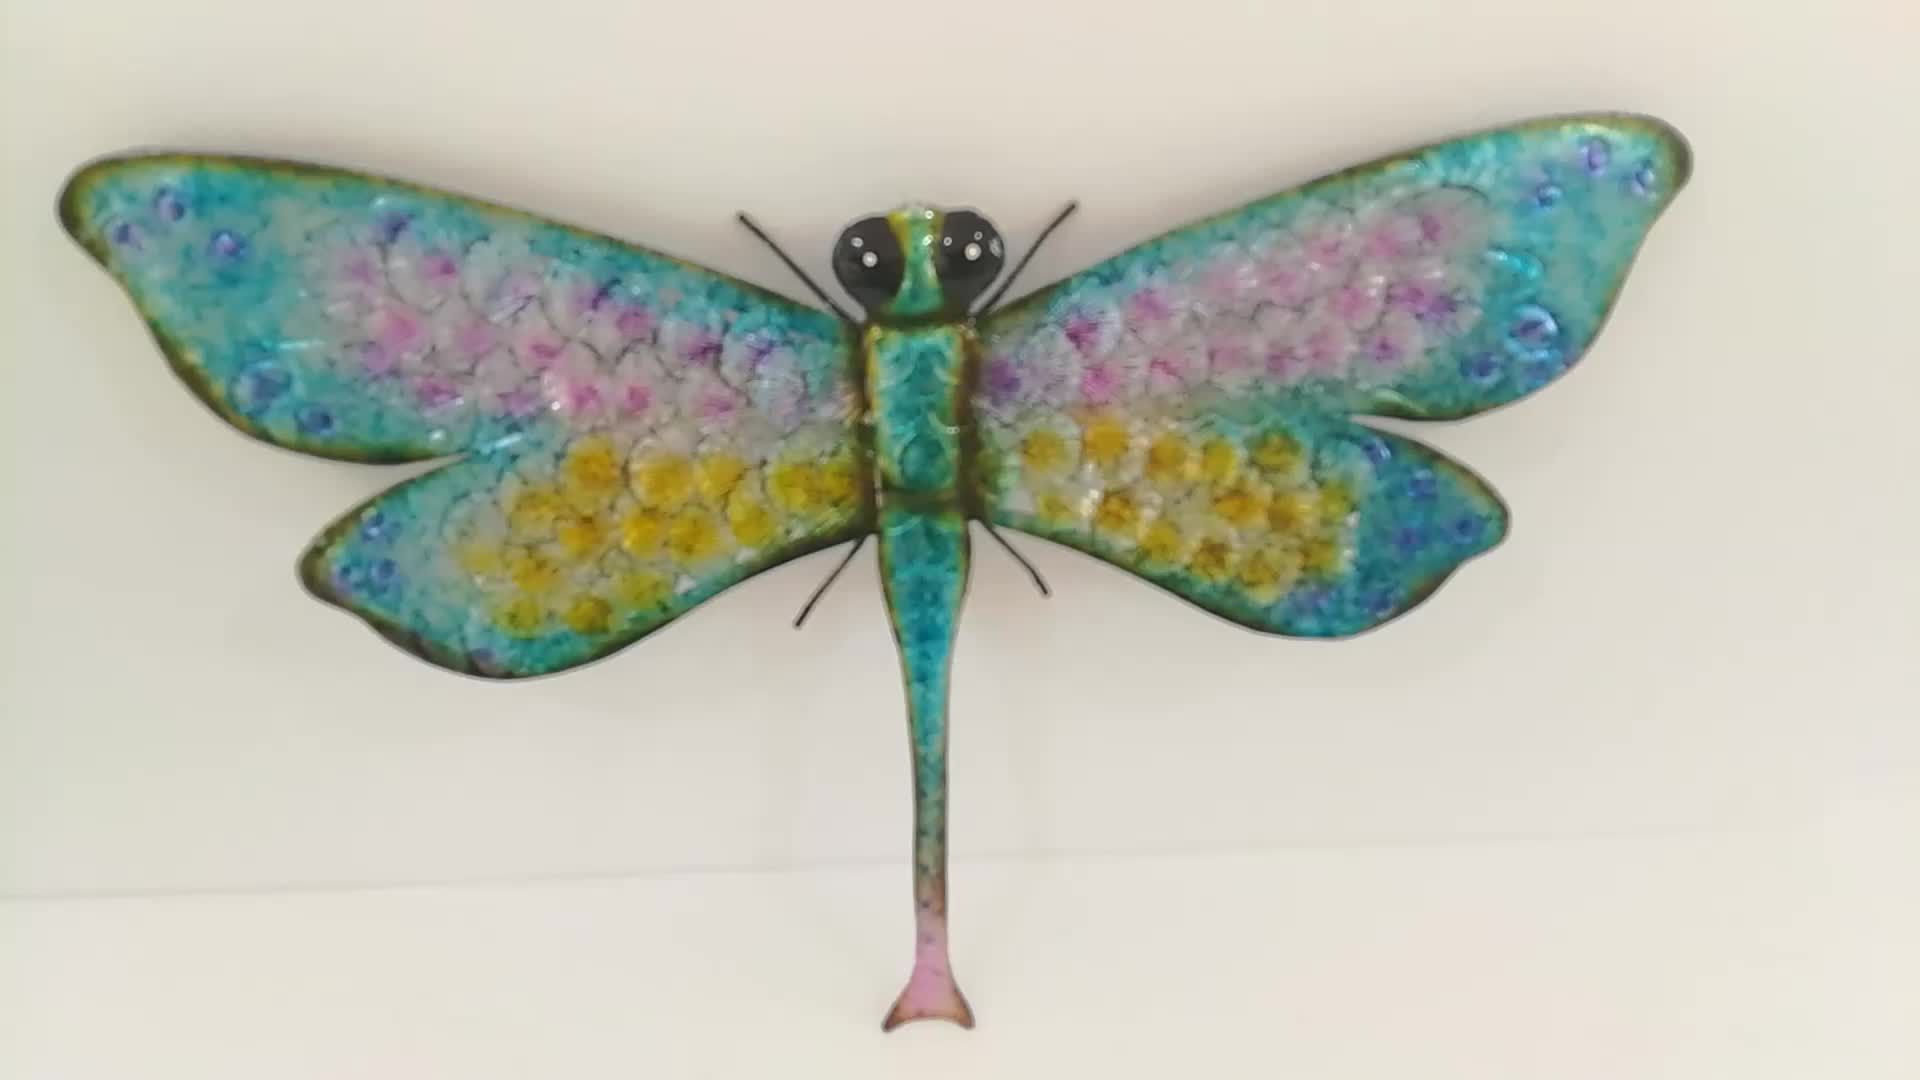 Garden Hanging Dragonfly Sculpture Wall Metal Art Decor – Buy Wall Regarding Most Popular Dragonflies Wall Art (View 5 of 20)